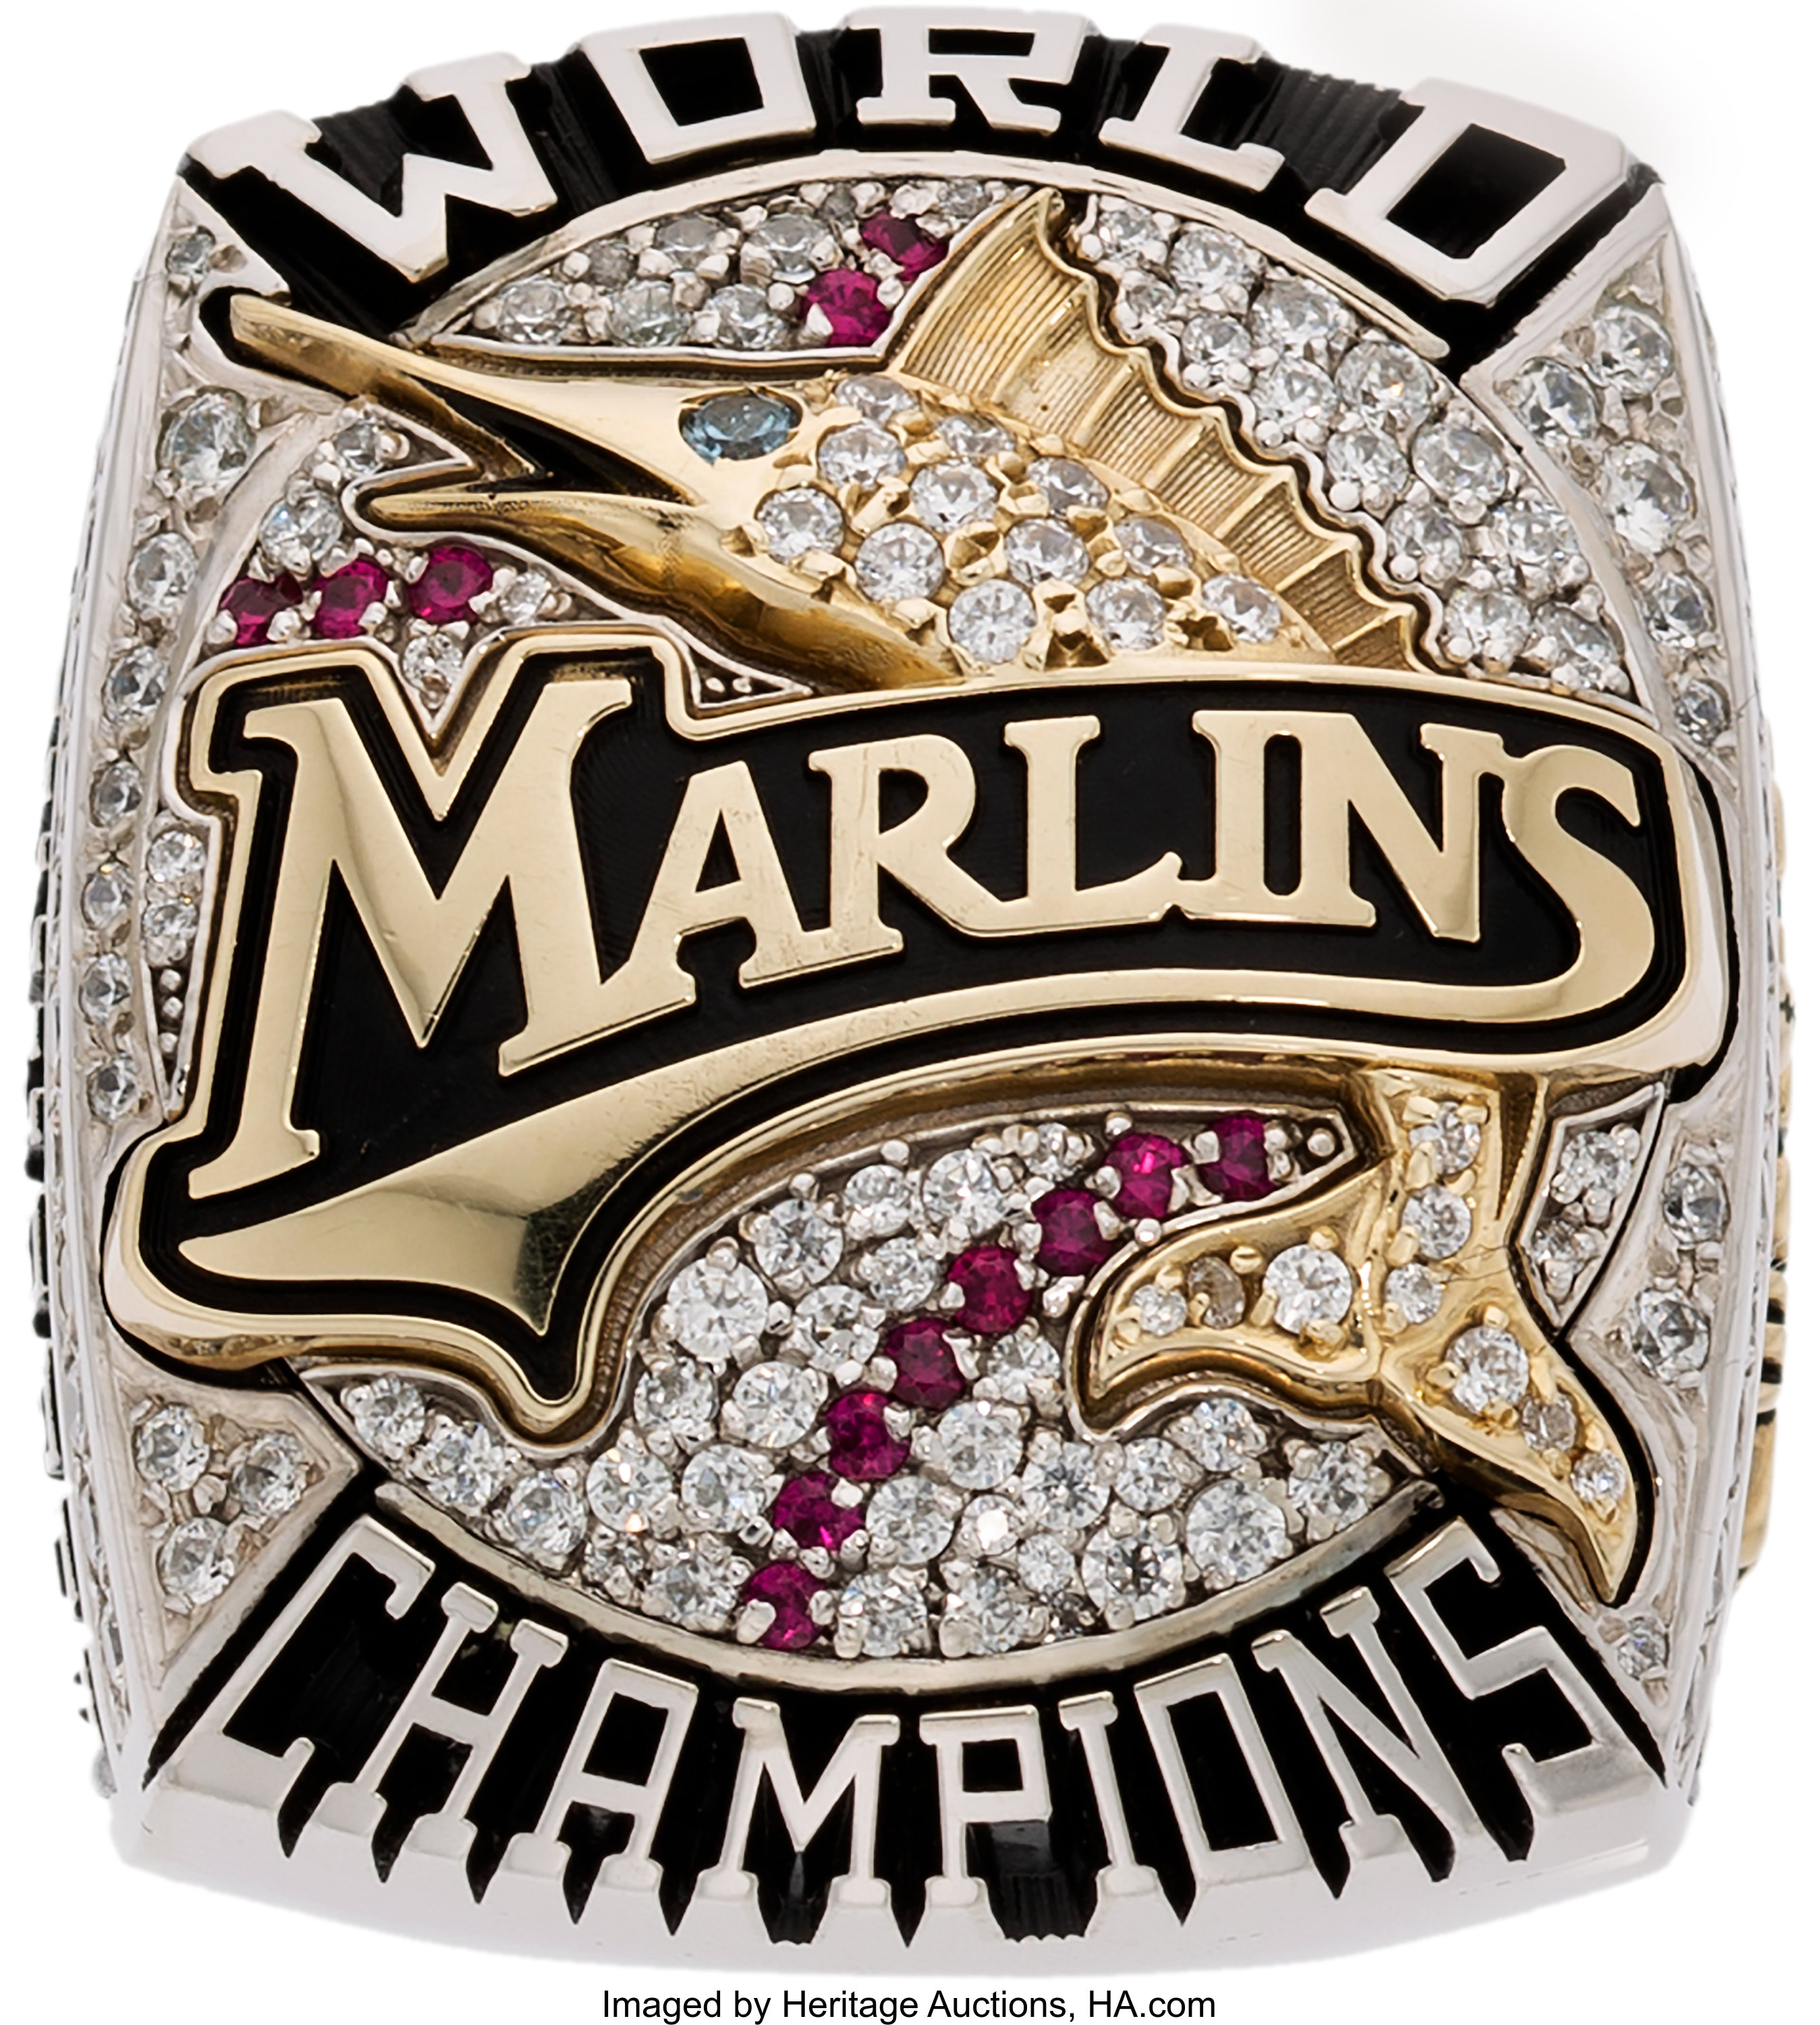 2003 Florida Marlins World Series Championship Ring. Baseball